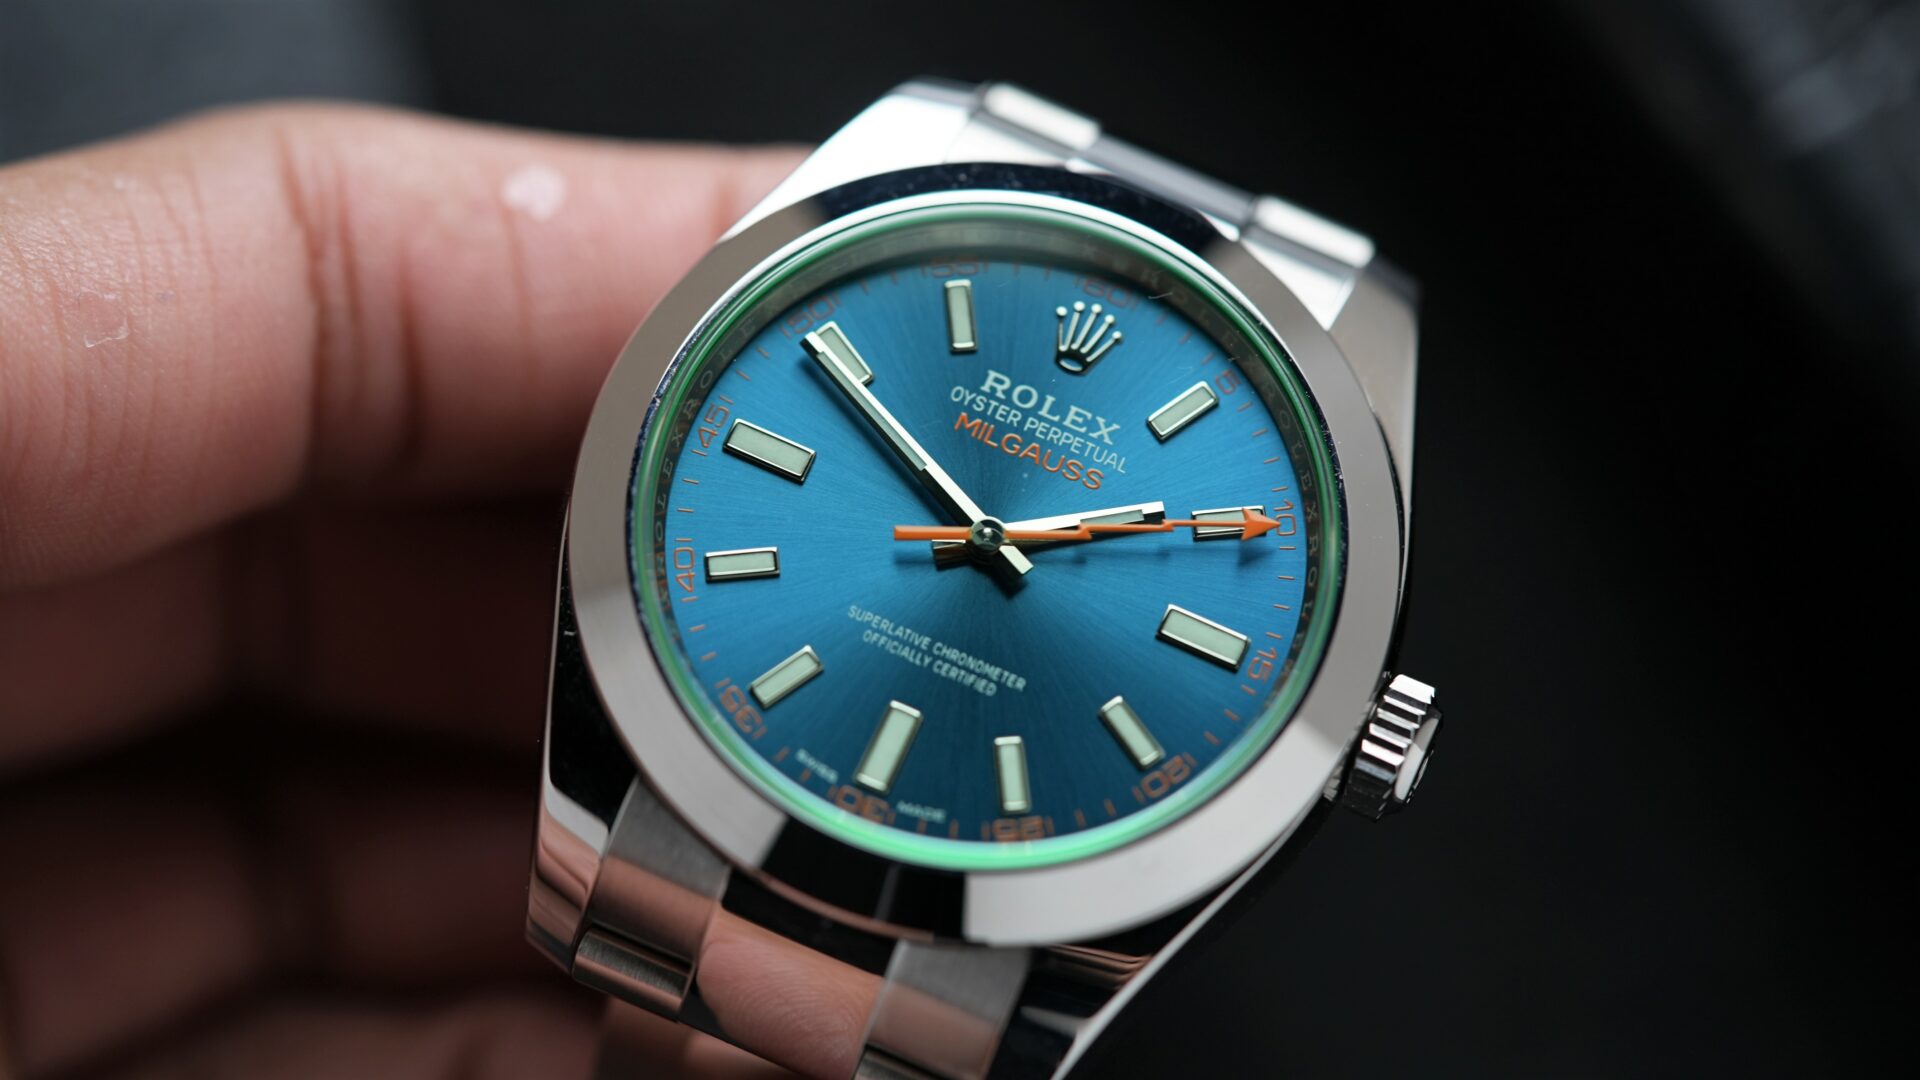 Rolex Milgauss Z Blue UNWORN 116400GV wristwatch displayed in hand.